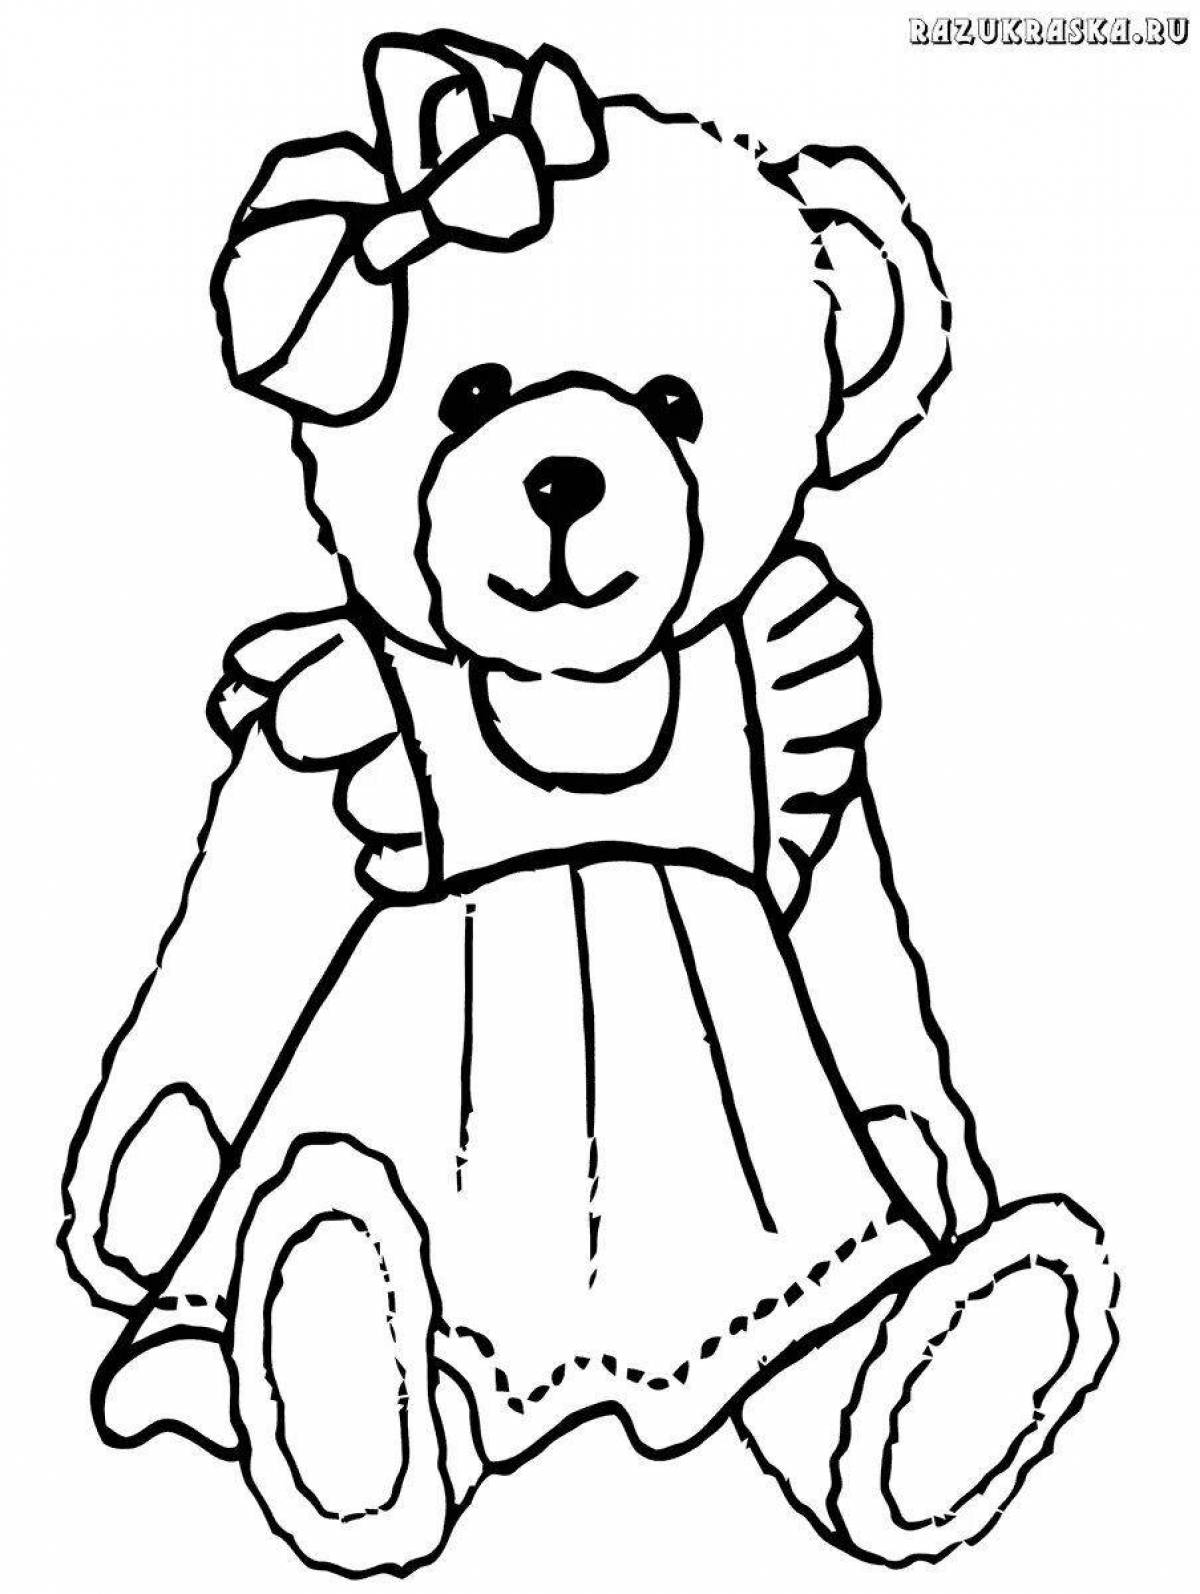 Раскраска huggable teddy bear для девочек